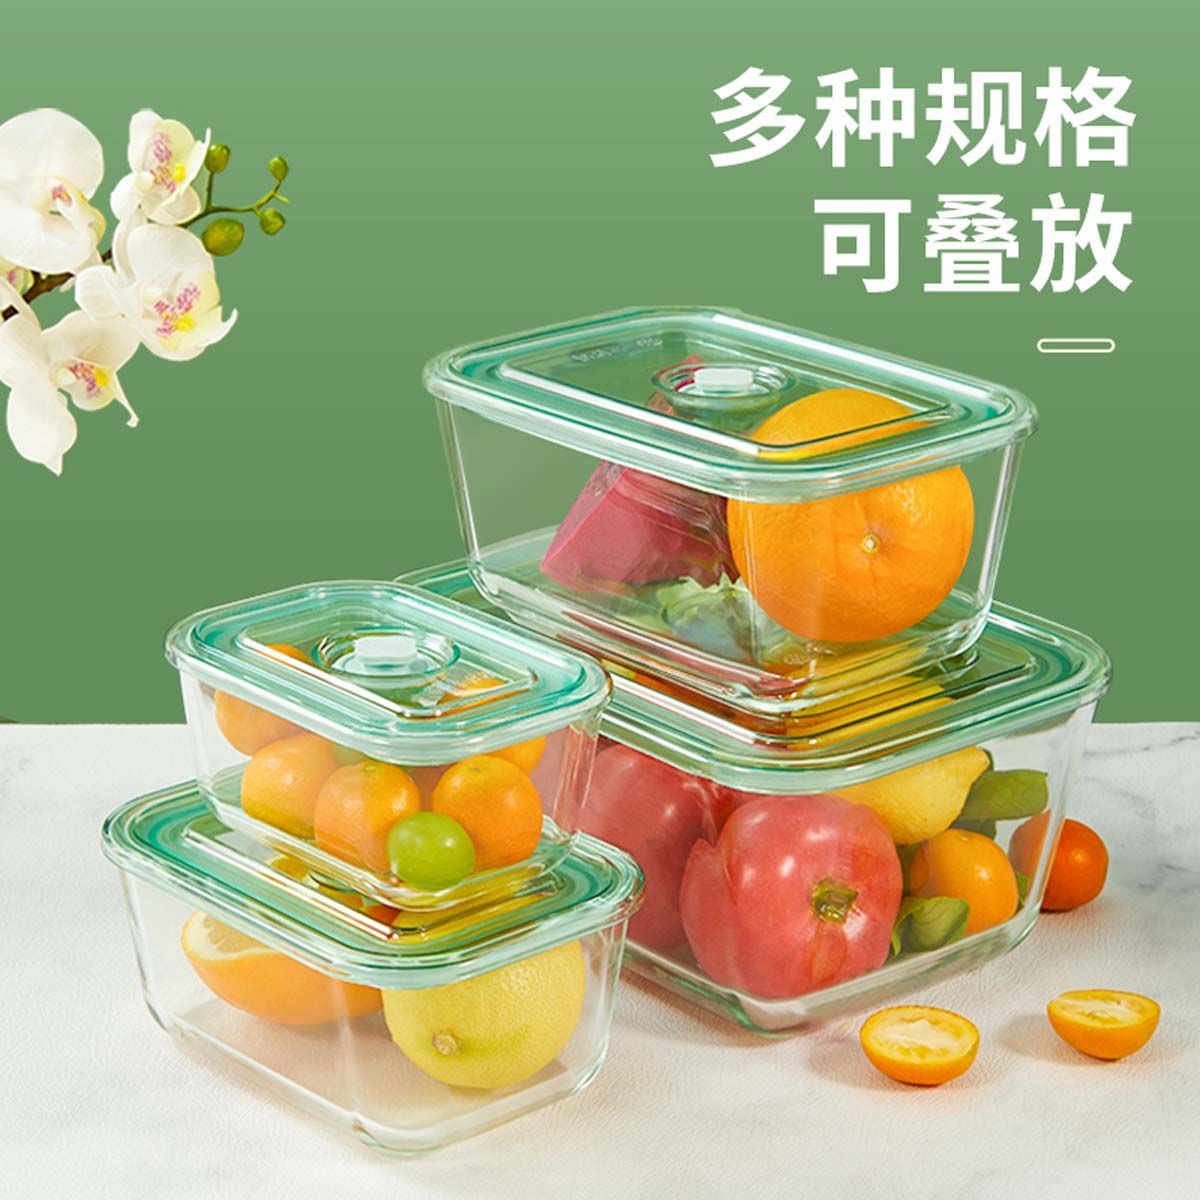 大容量冰箱保鲜盒玻璃饭盒可微波炉加热餐盒食品级密封水果便当盒